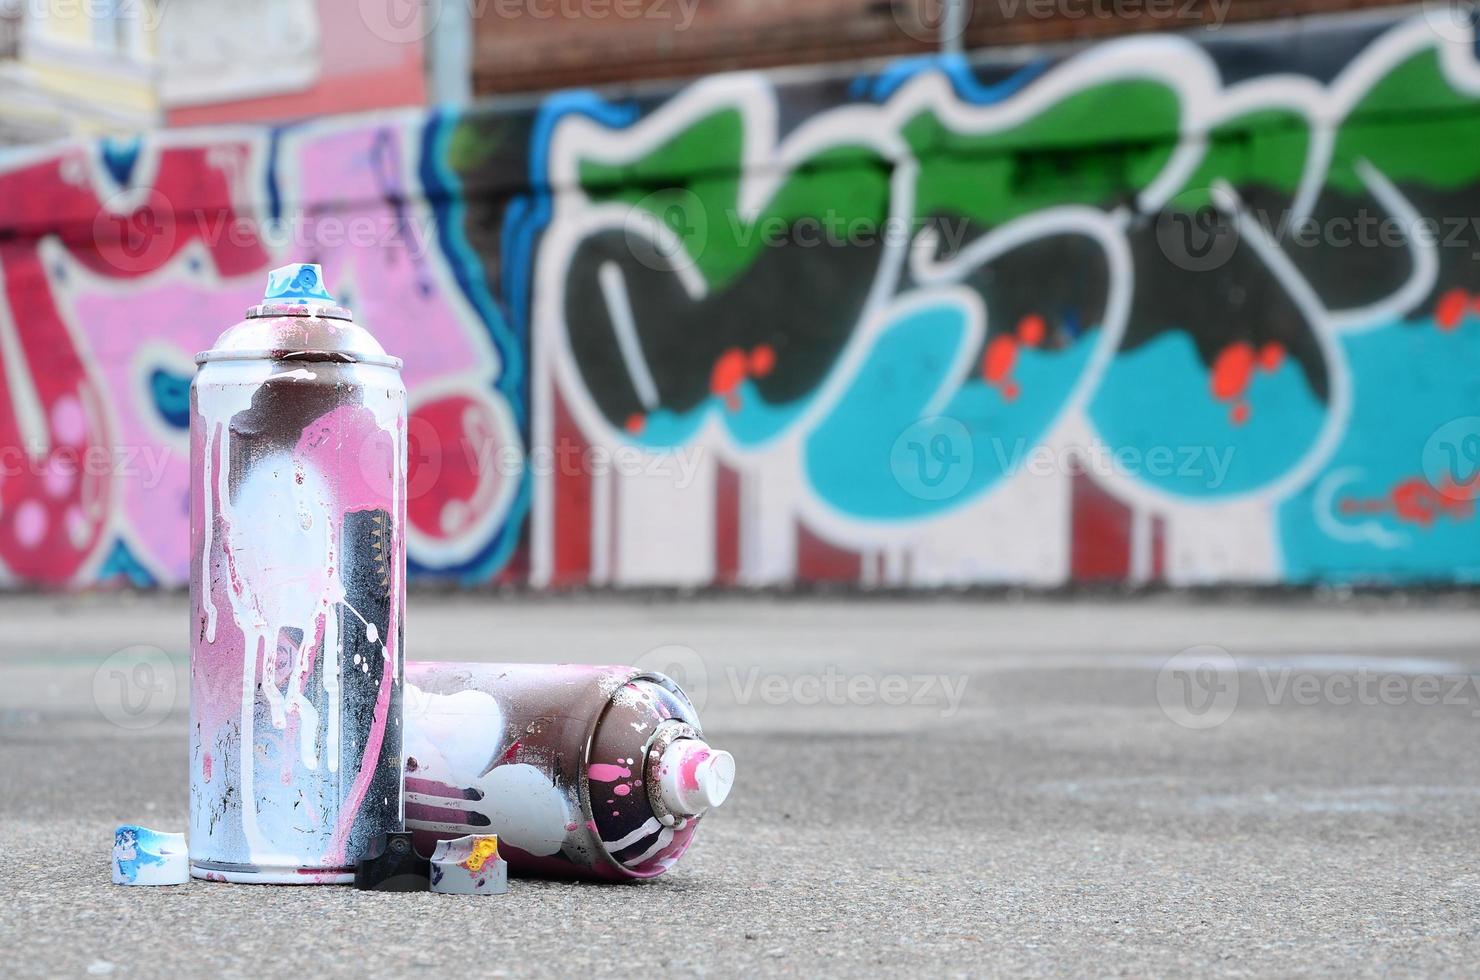 plusieurs bombes aérosols usagées avec de la peinture rose et blanche et des bouchons pour pulvériser de la peinture sous pression se trouvent sur l'asphalte près du mur peint dans des dessins de graffitis colorés photo